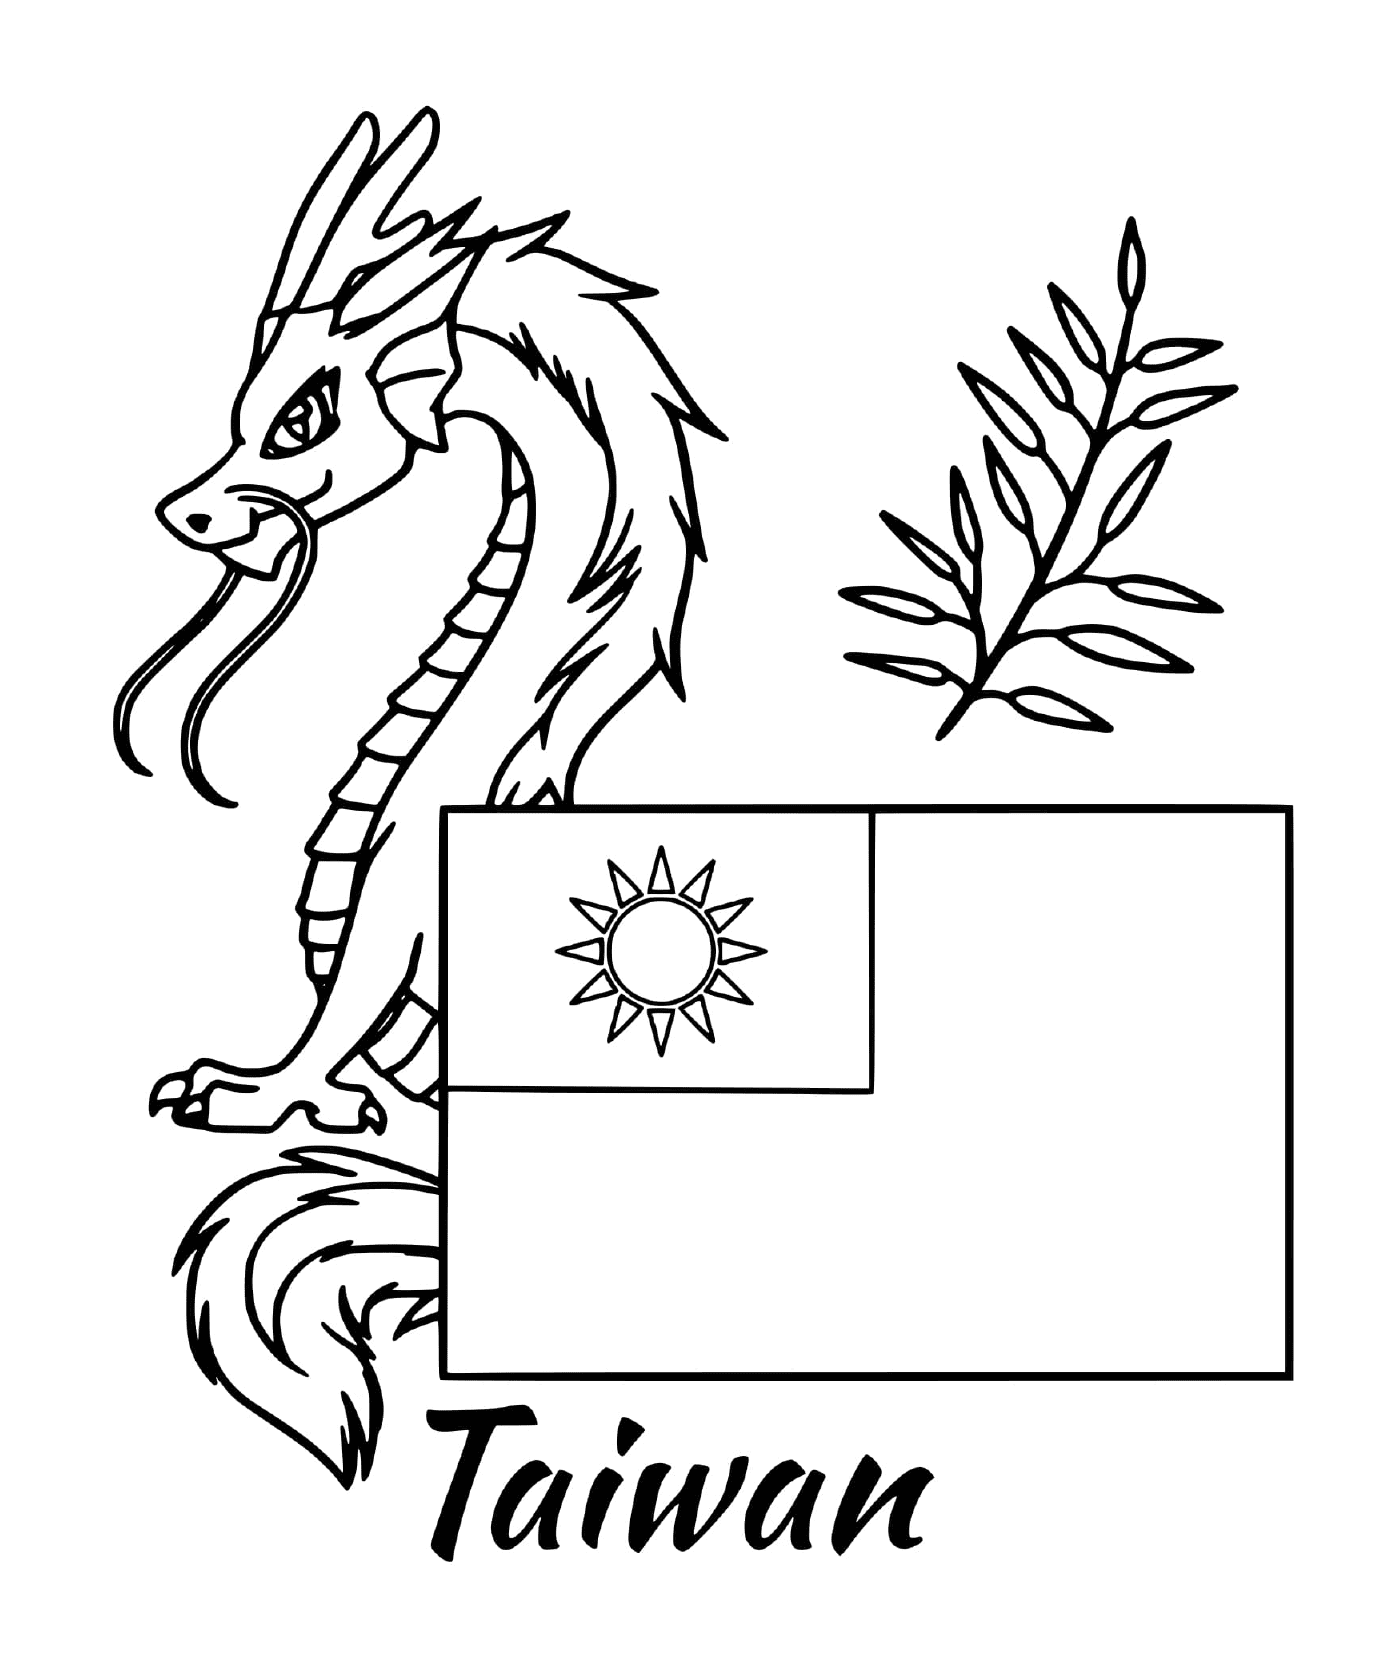  有龙的台湾国旗 